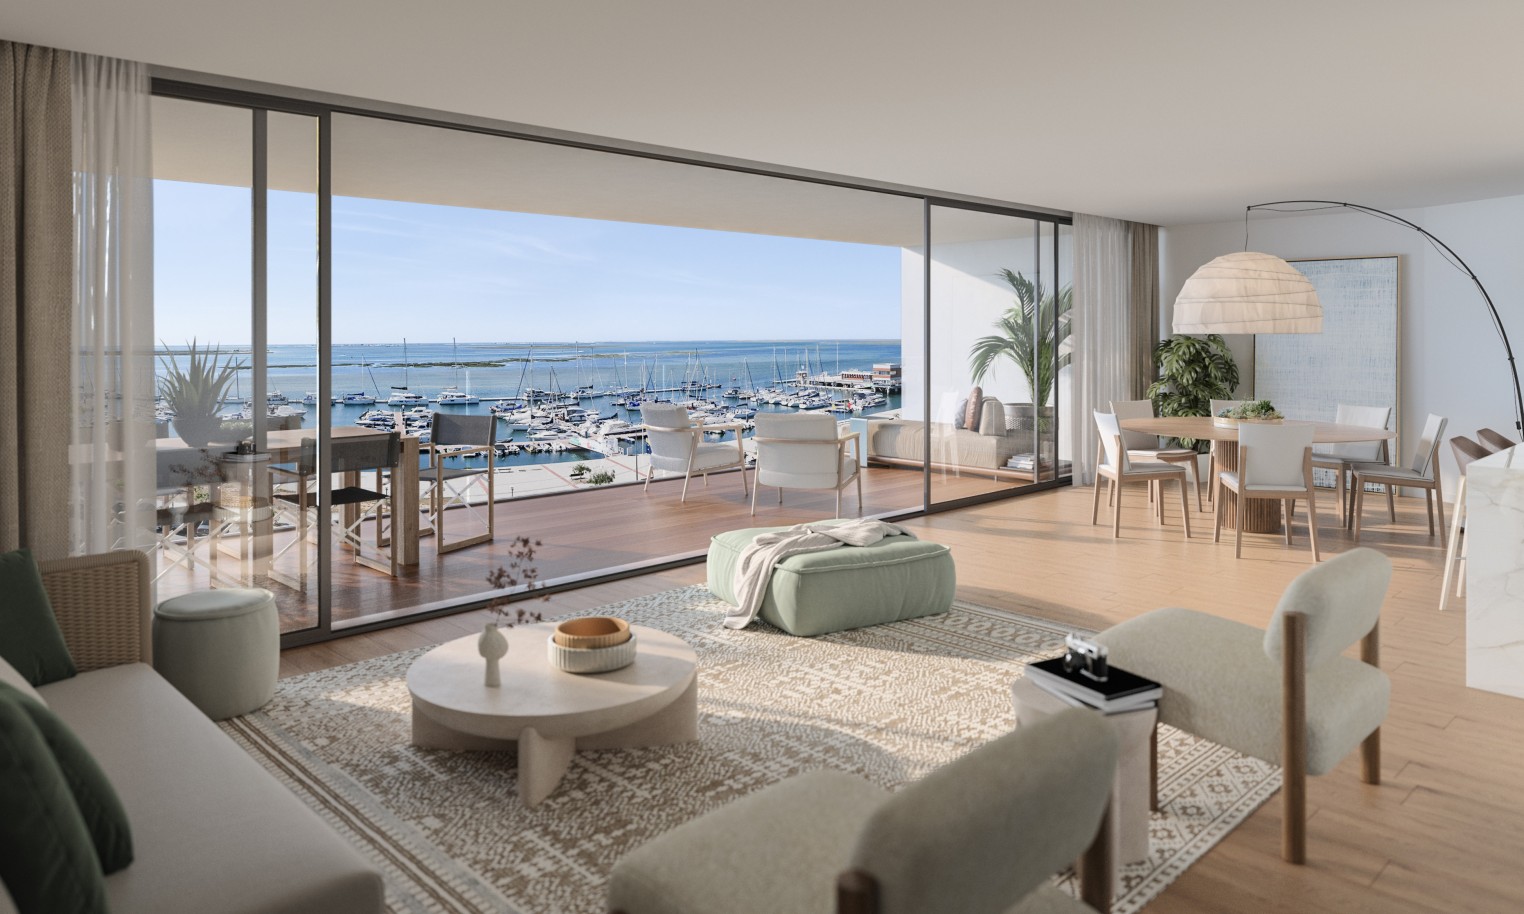 Appartements neufs avec vue sur mer, 1, 2 & 3 chambres, à vendre à Olhão, Algarve_243674